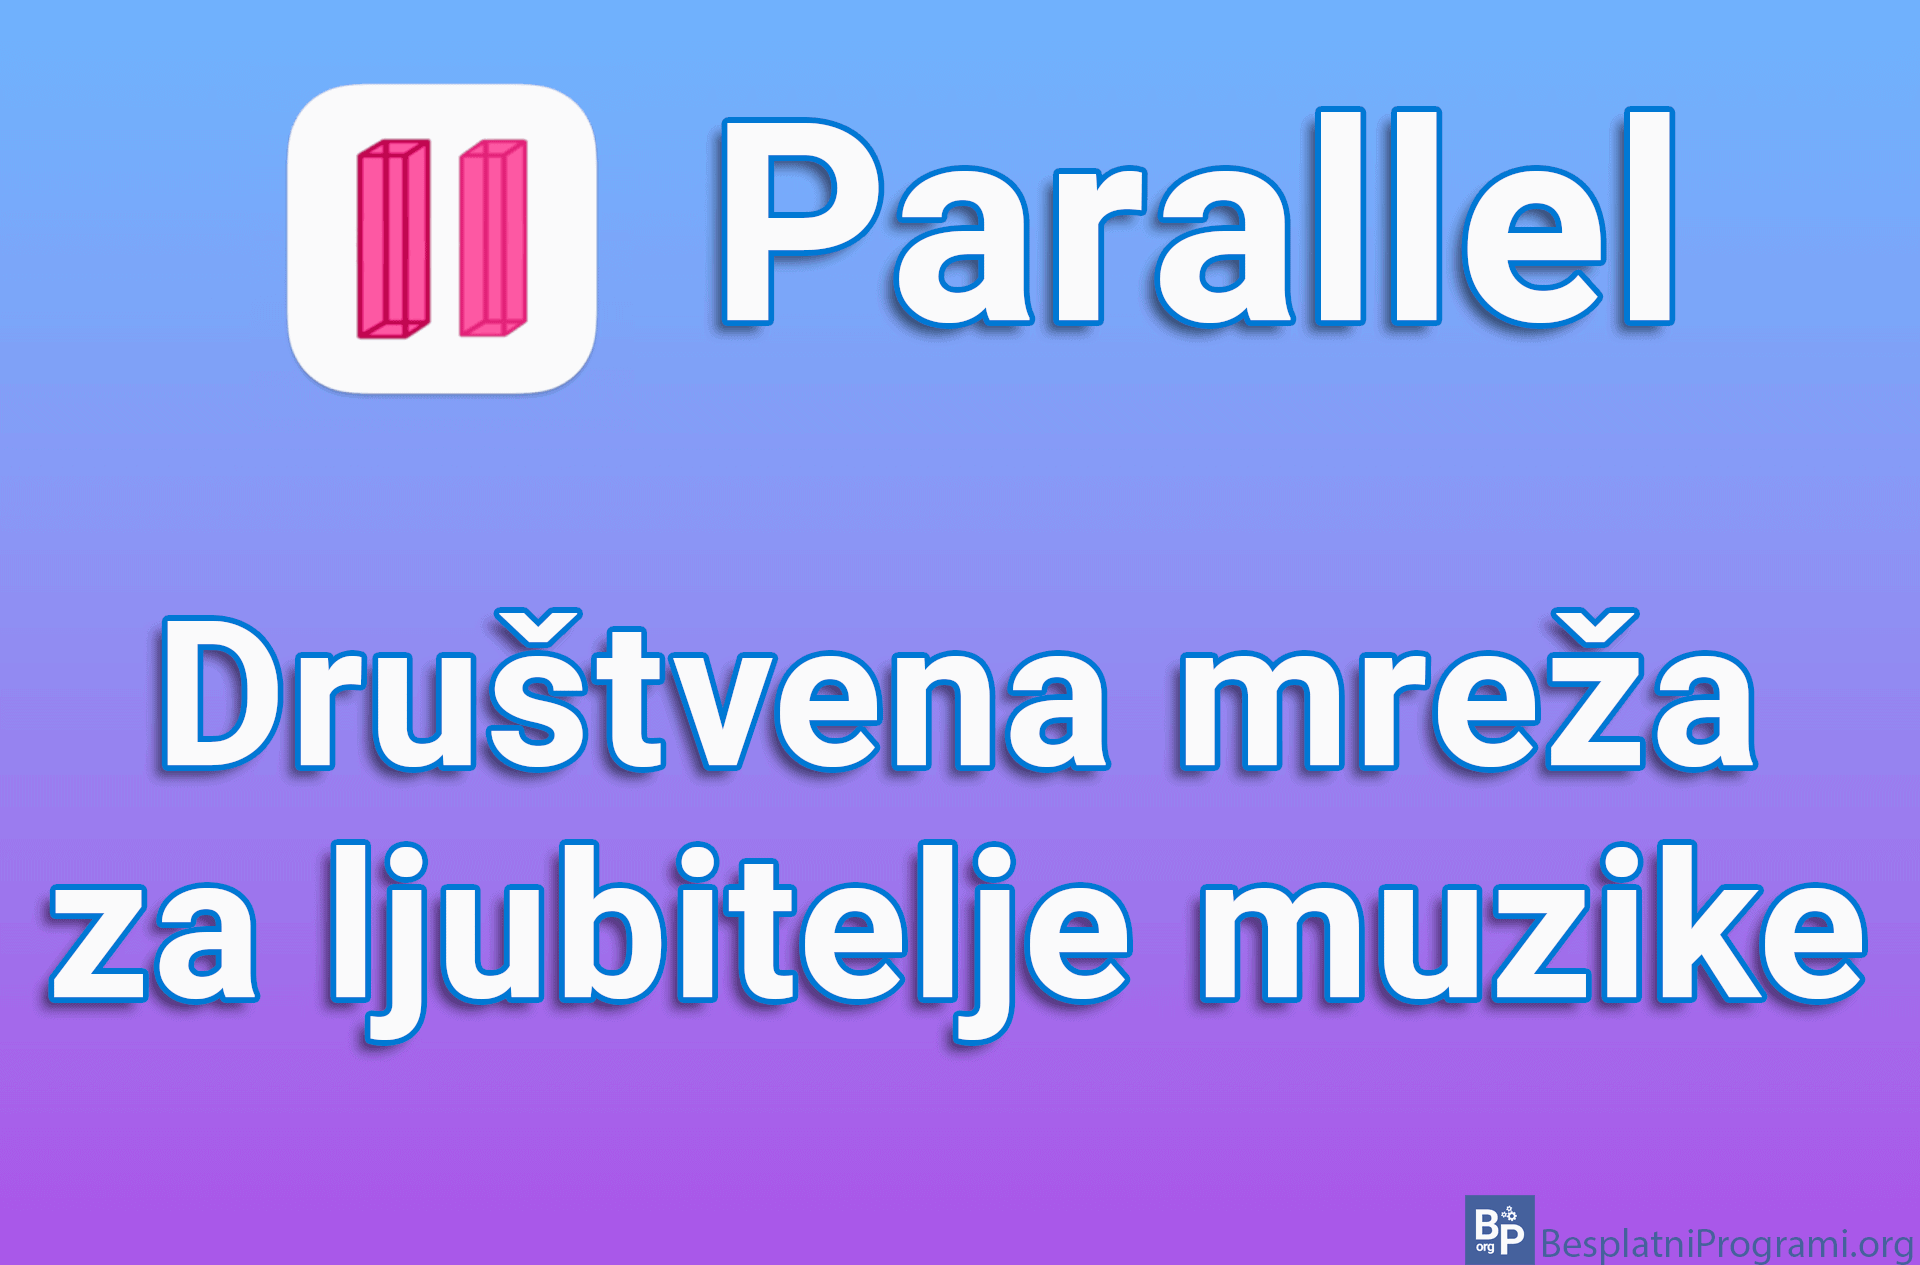 Parallel - Društvena mreža za ljubitelje muzike